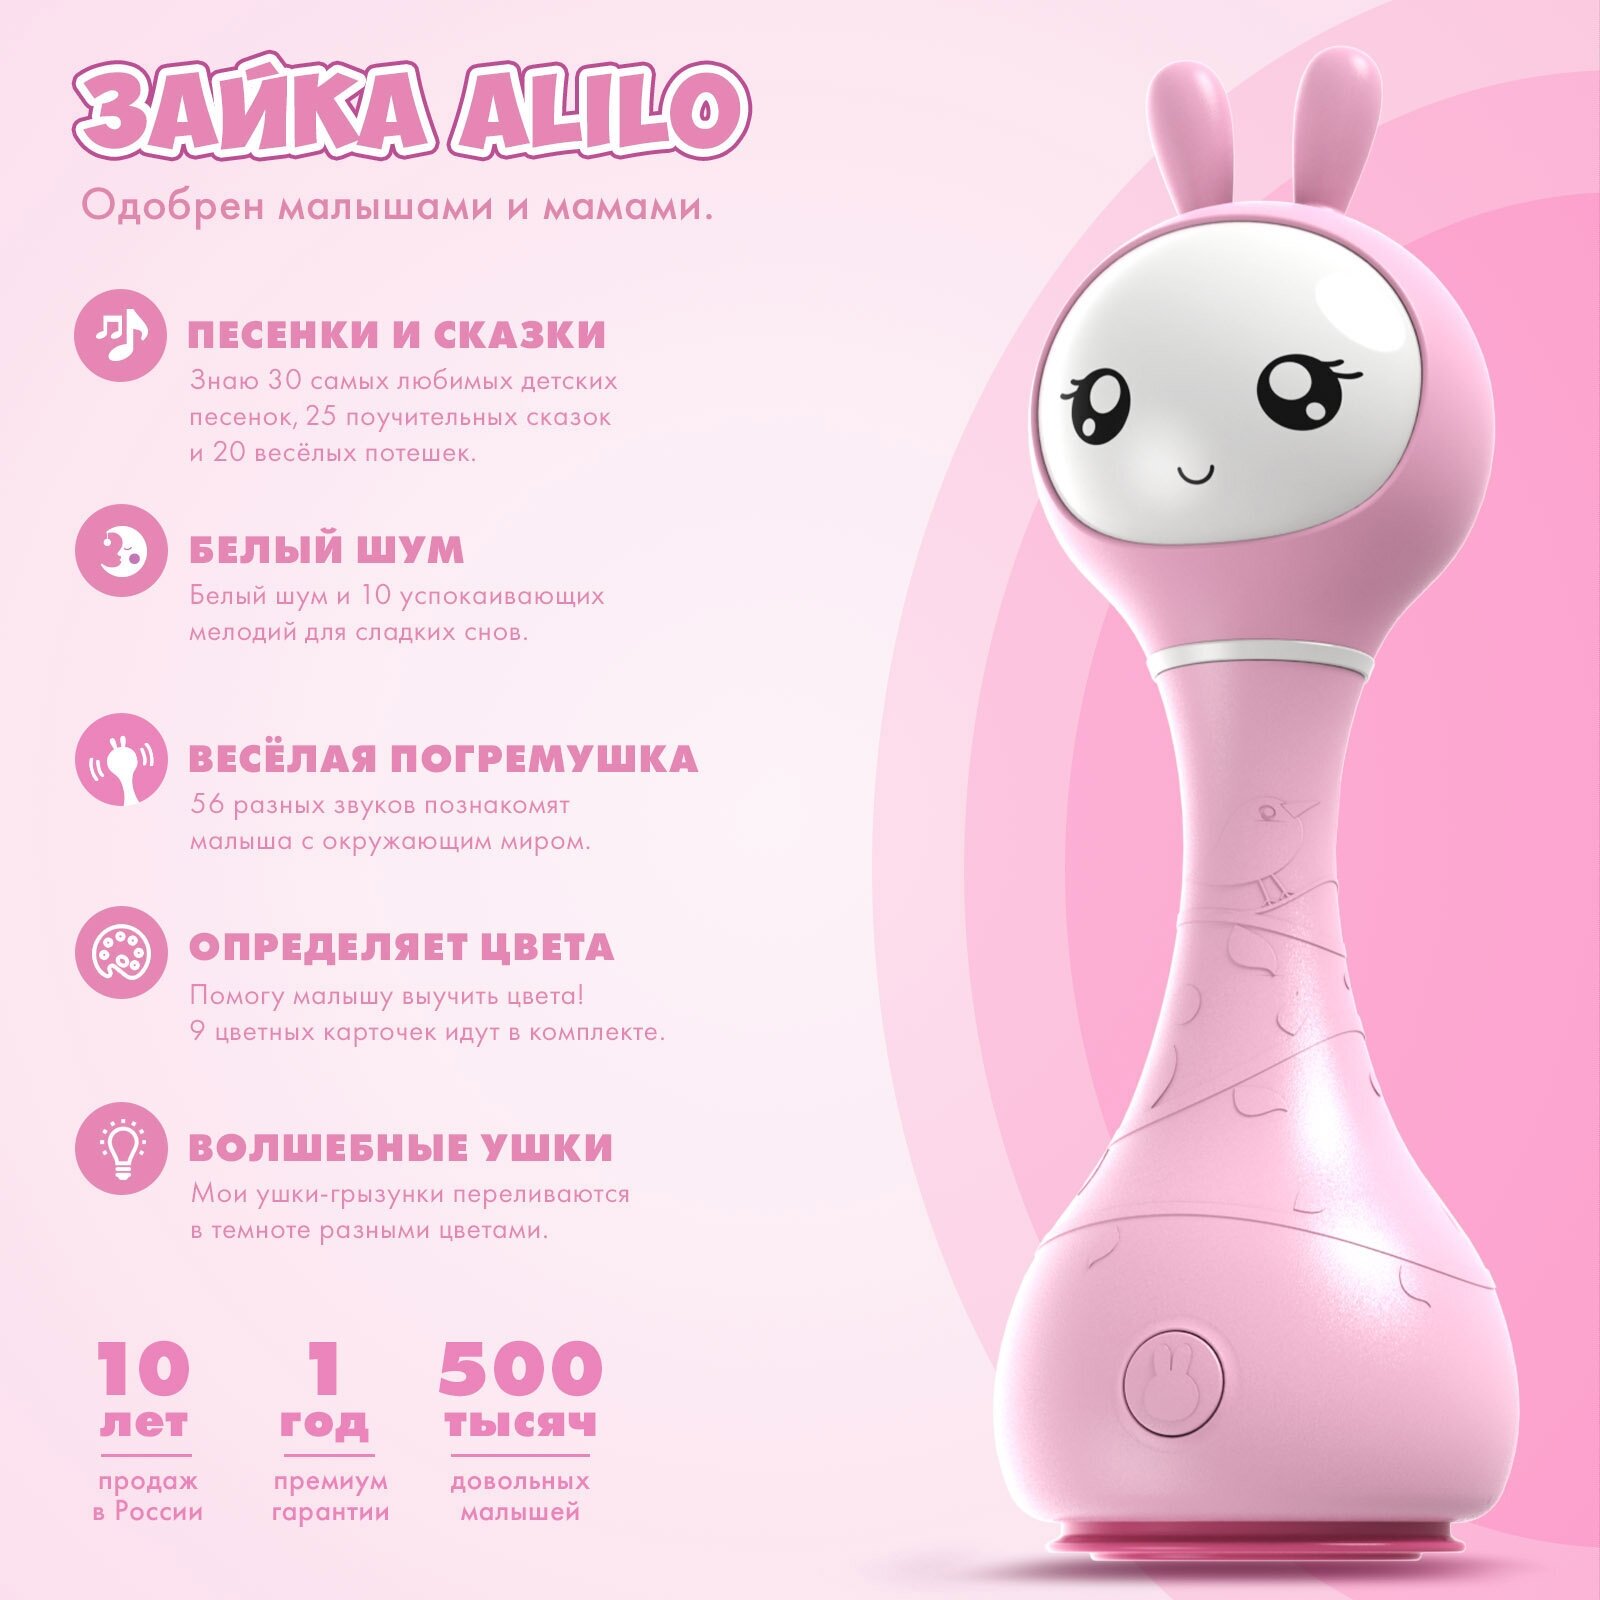 Интерактивная музыкальная игрушка Умный зайка alilo R1. Распознавание цветов. Для мальчиков, девочек